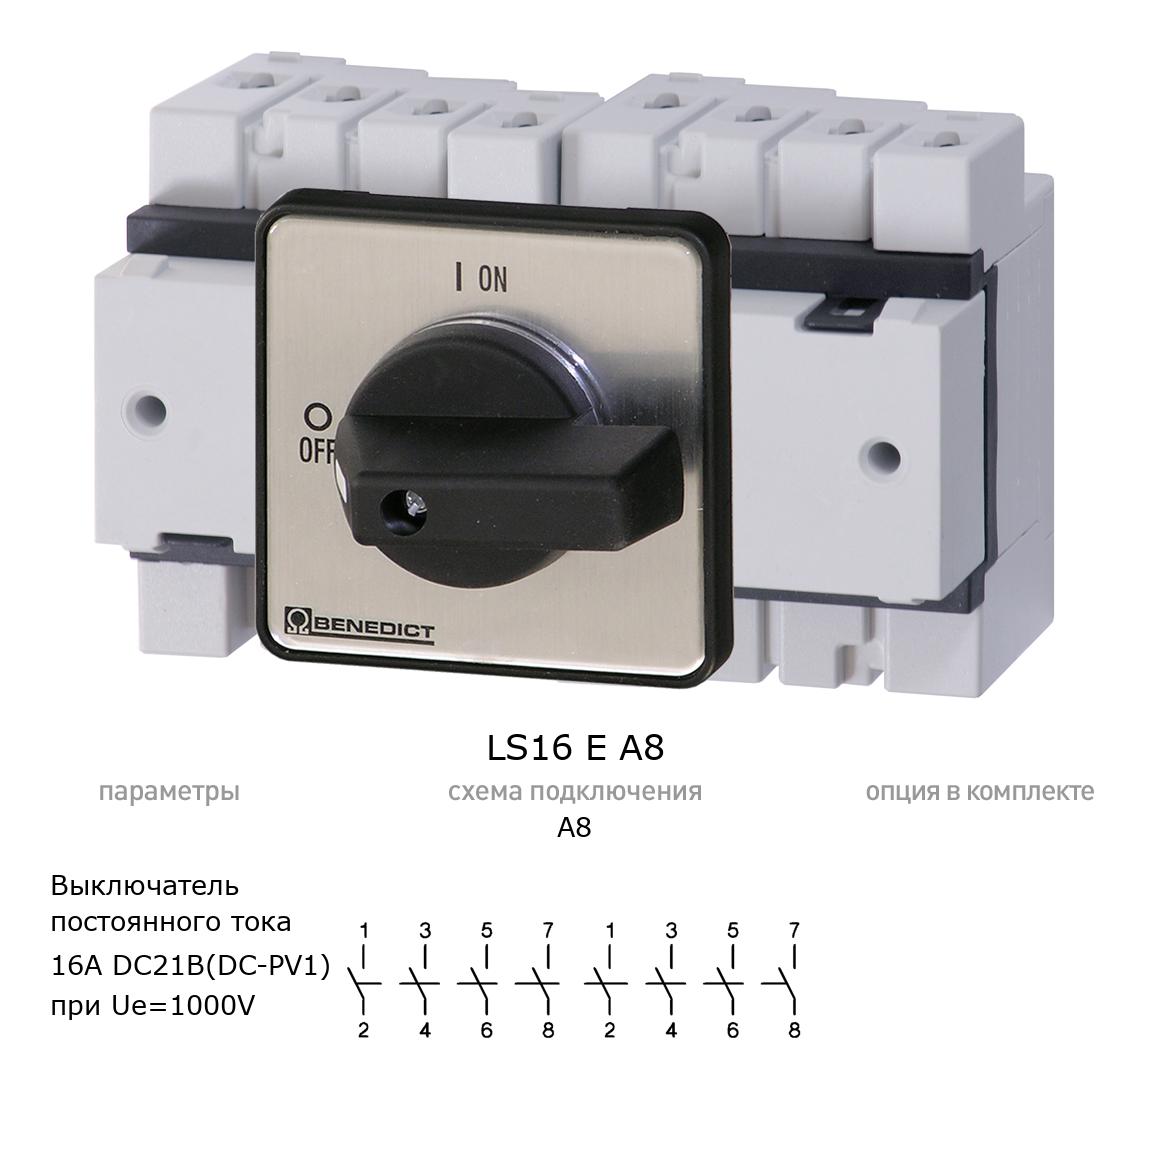 Кулачковый переключатель для постоянного тока (DC) LS16 E A8 BENEDICT